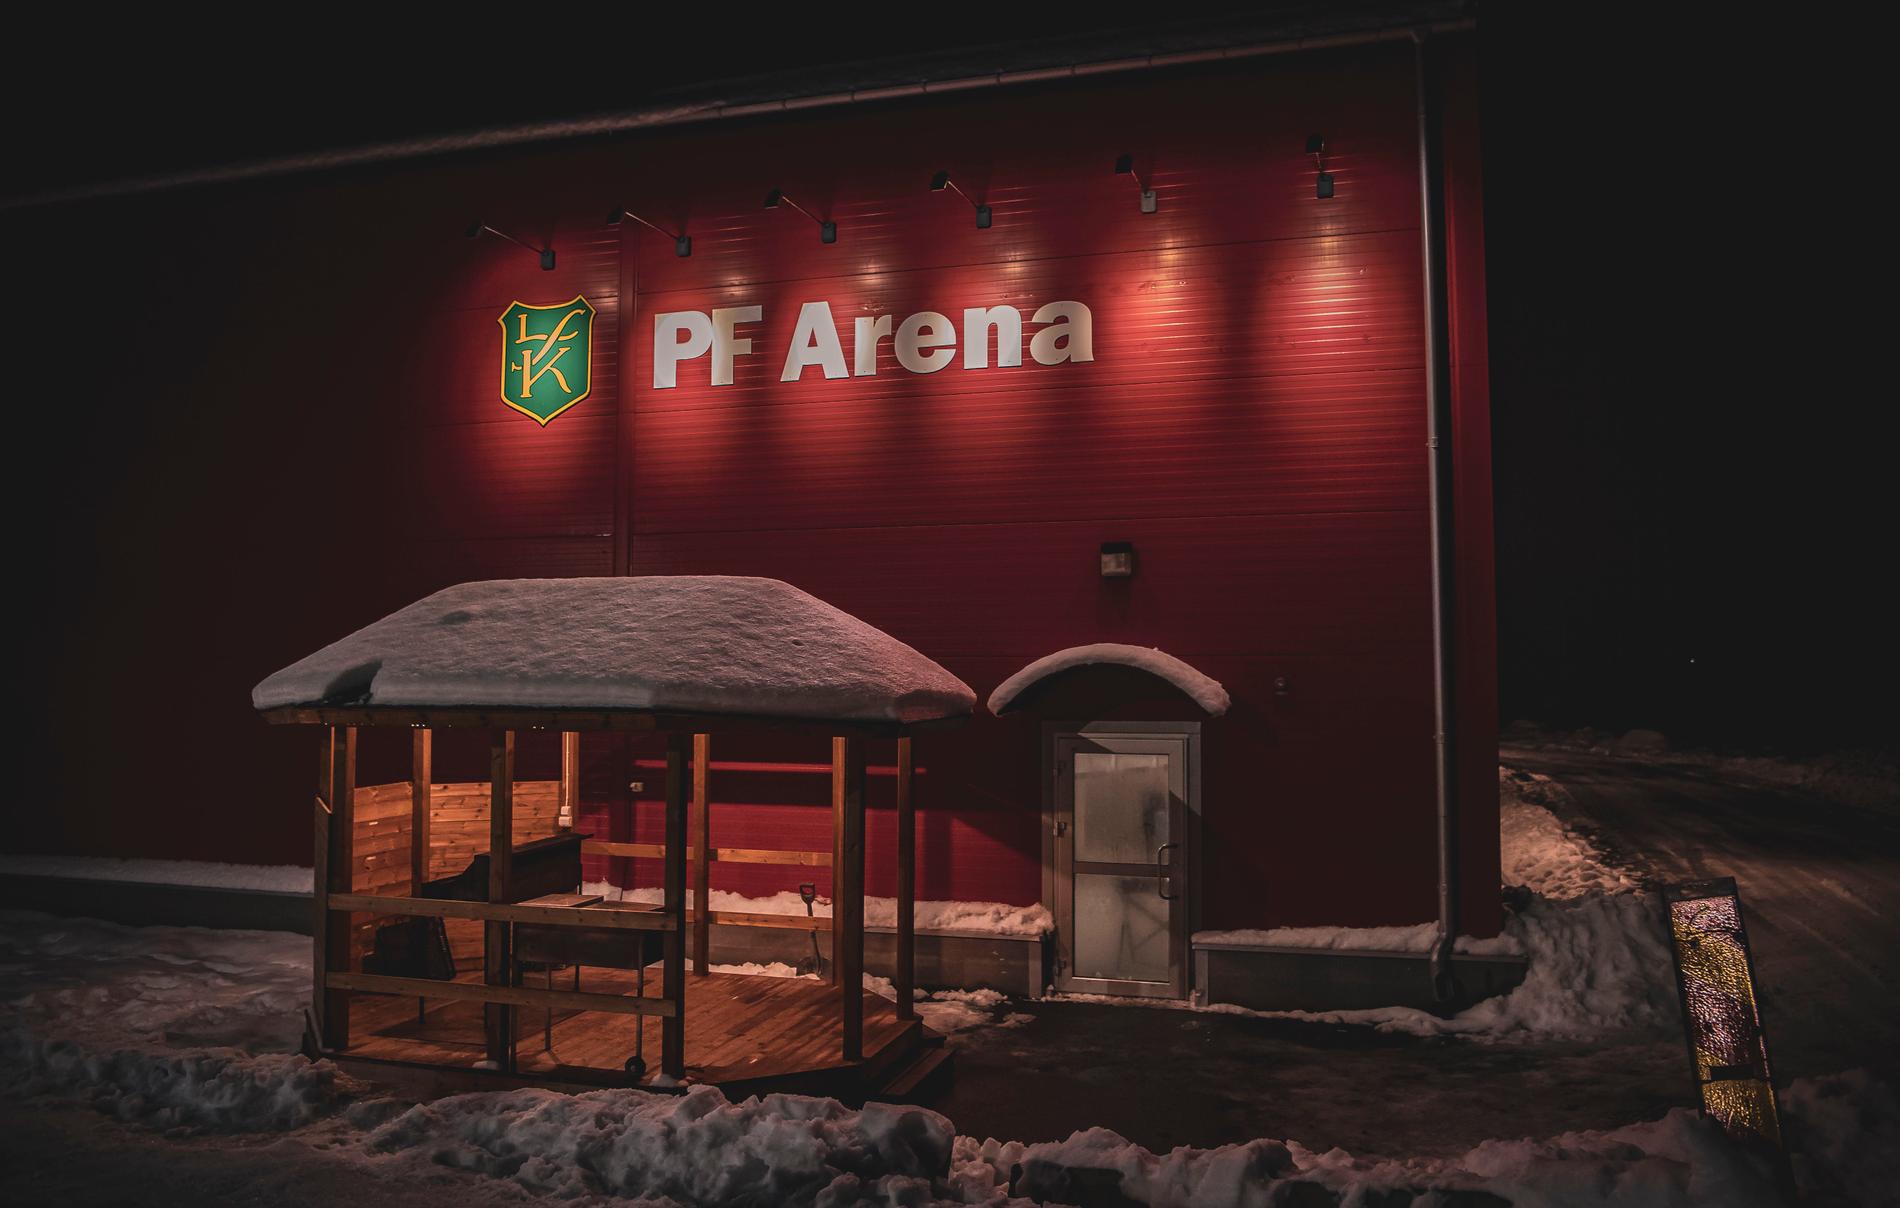 Ishallen står placerad i tätorten Enånger några mil utanför Hudiksvall. 